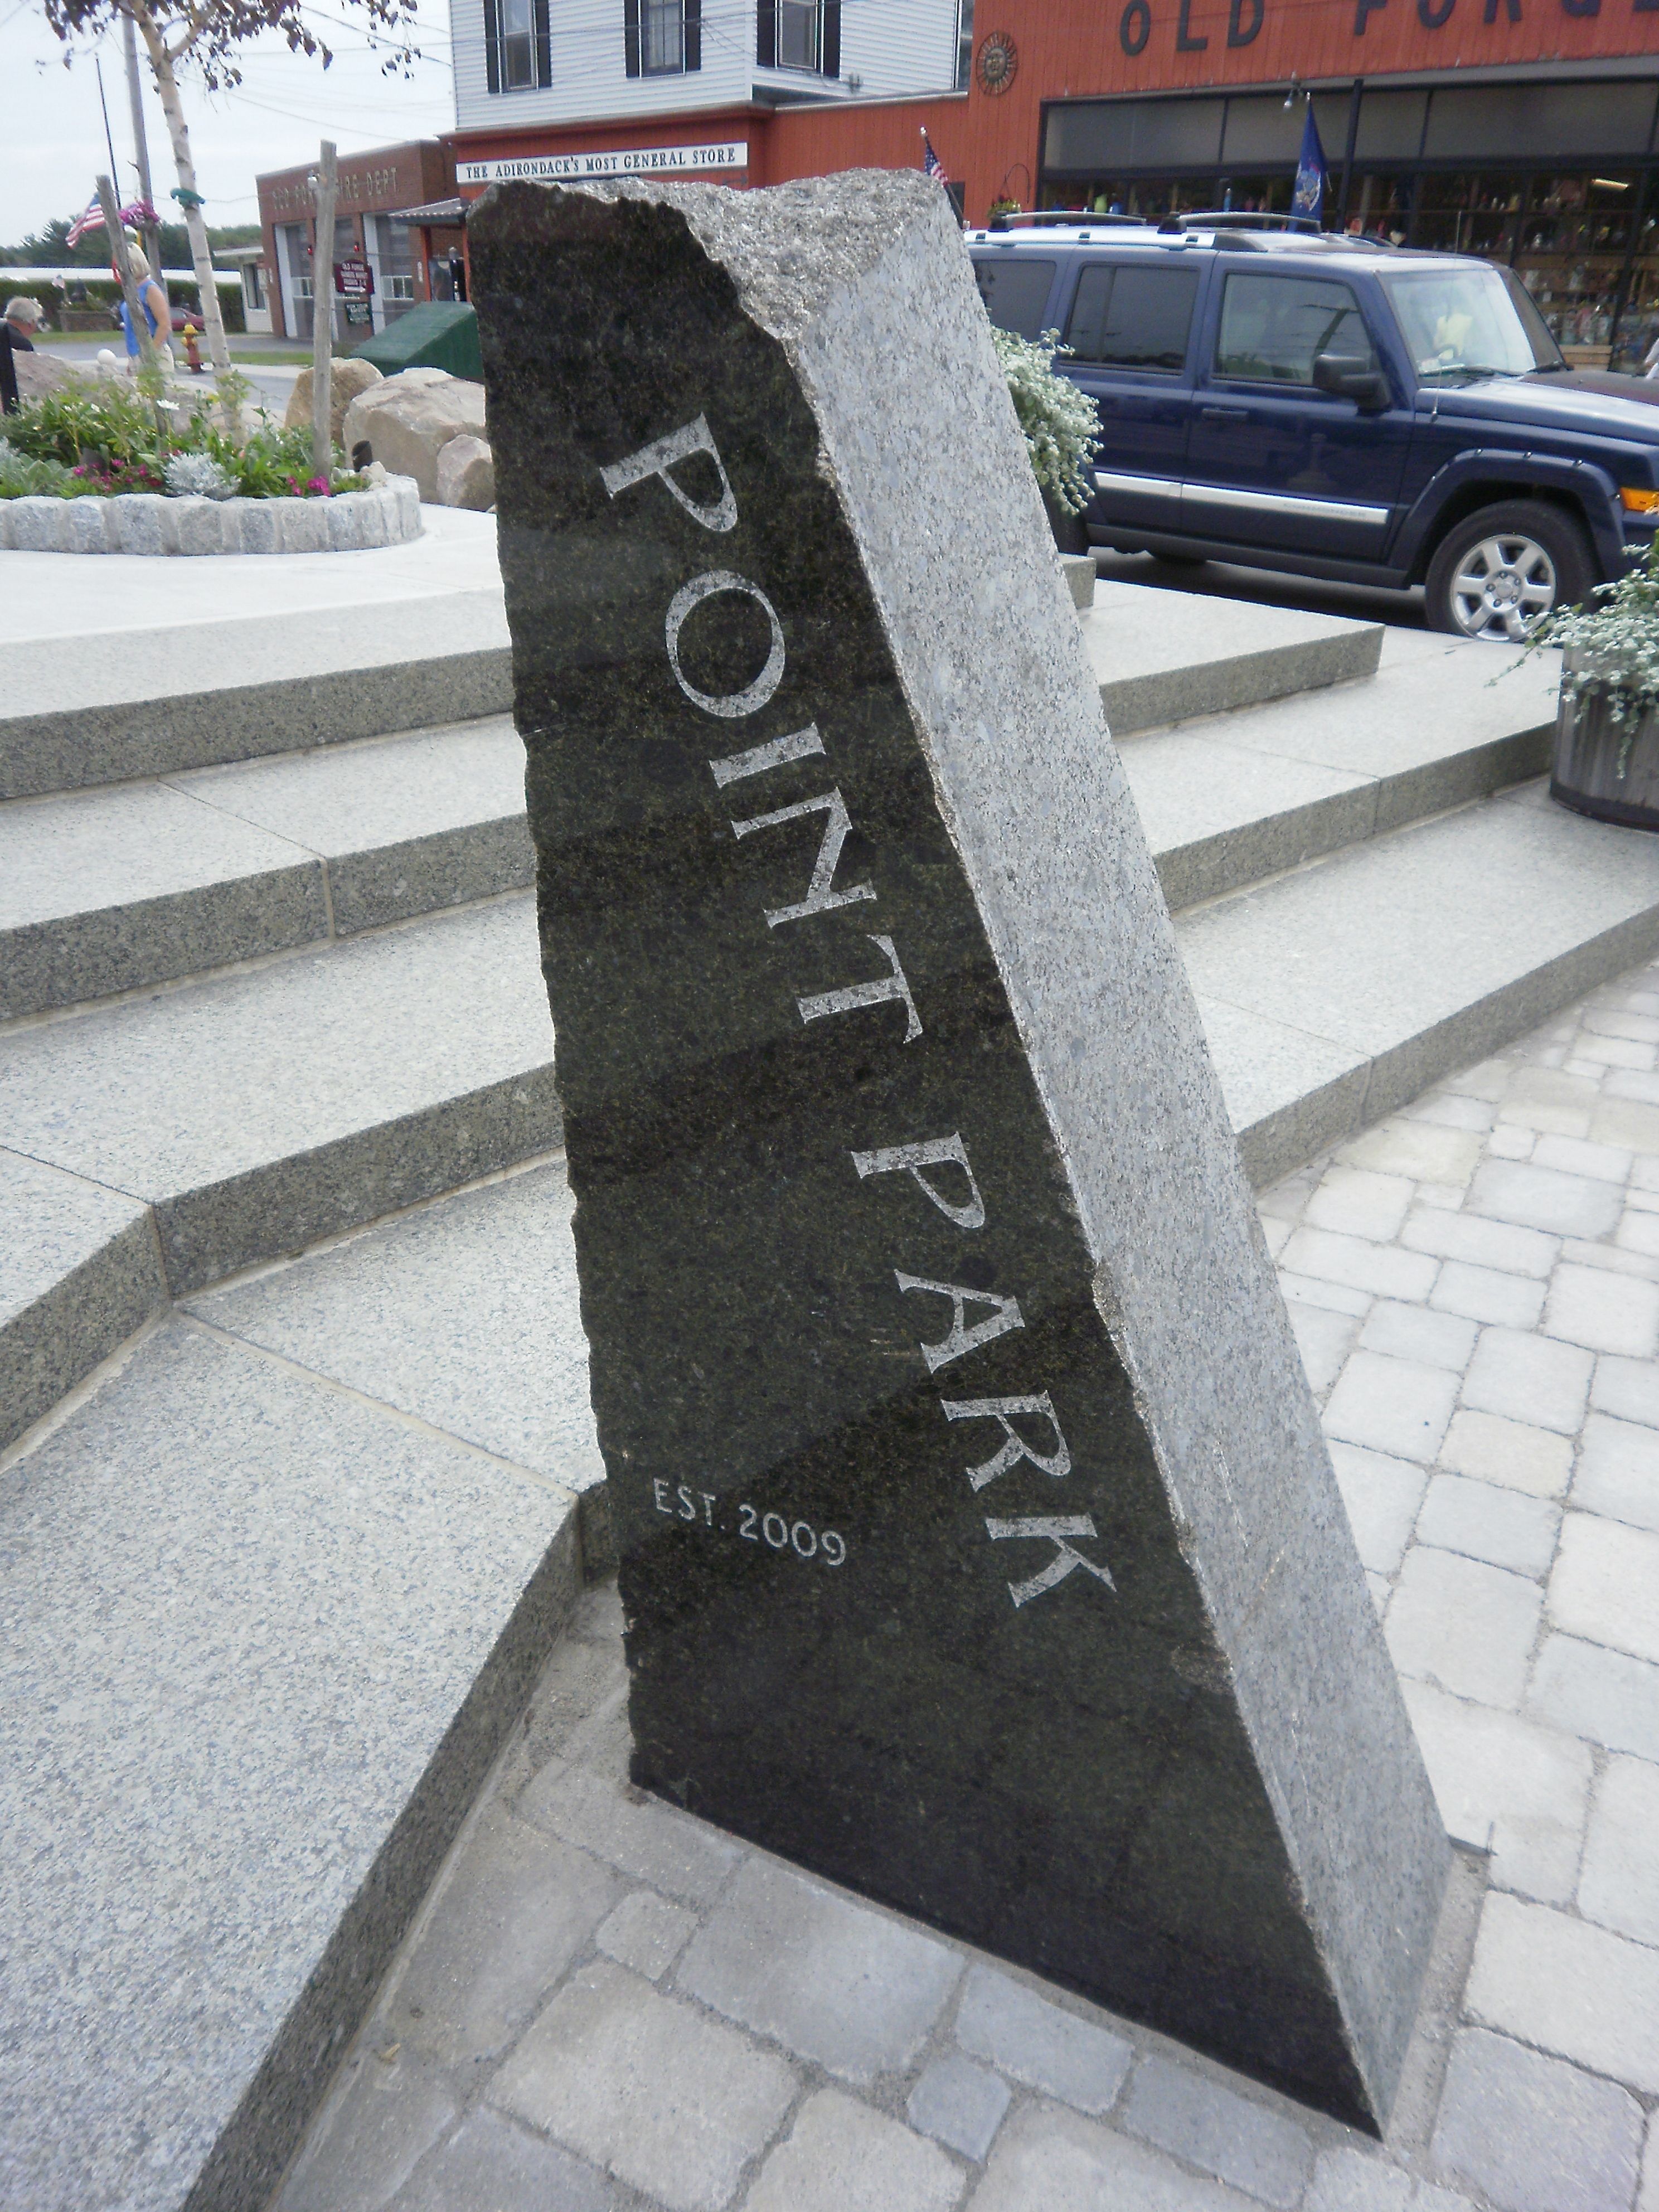 Point Park sign - Est. 2009